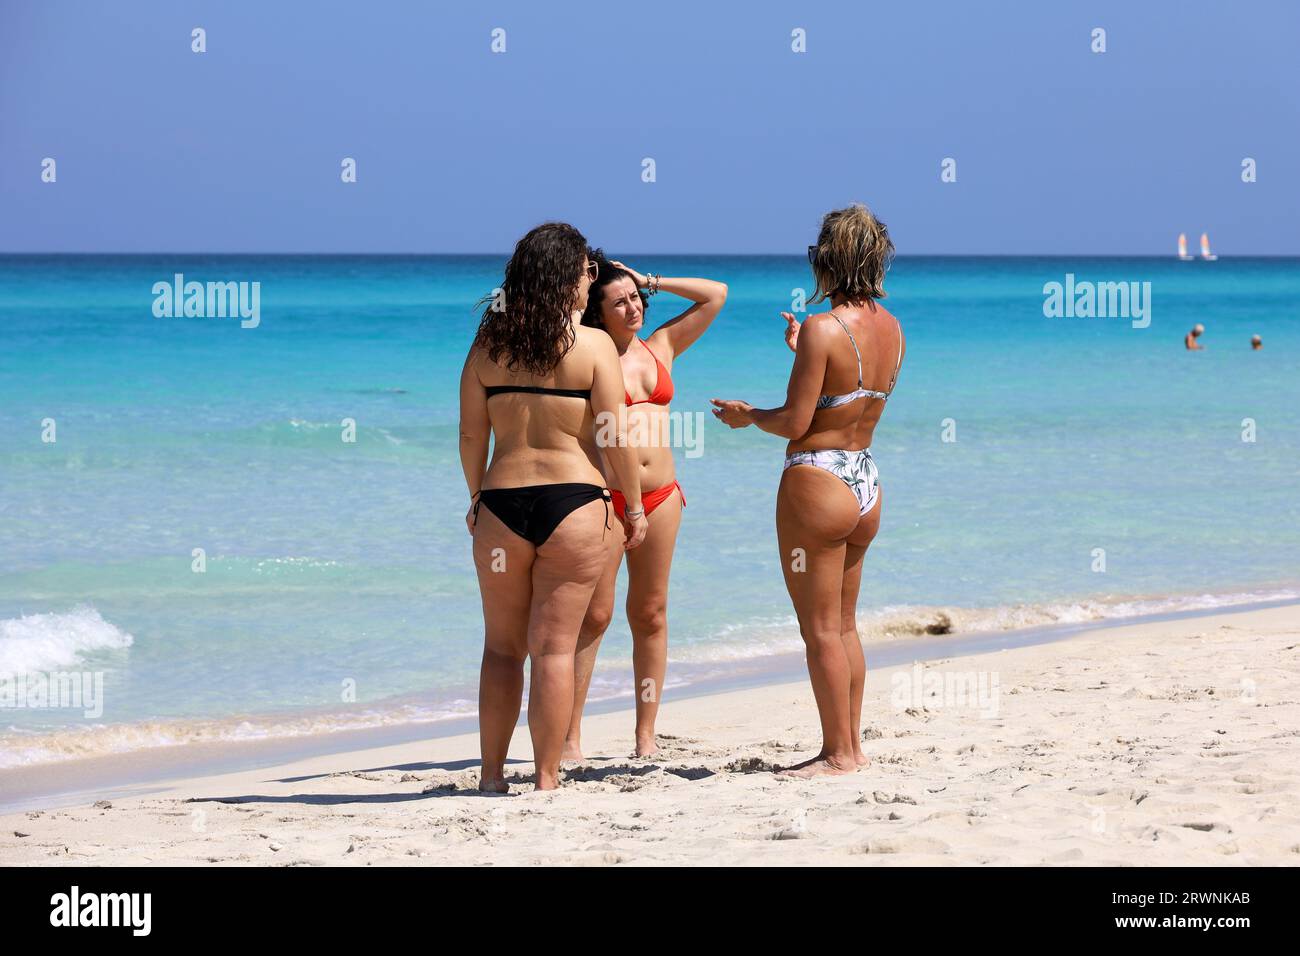 Tre donne in bikini che parlano sulla spiaggia tropicale. Costa del mare, località turistica sull'isola caraibica Foto Stock